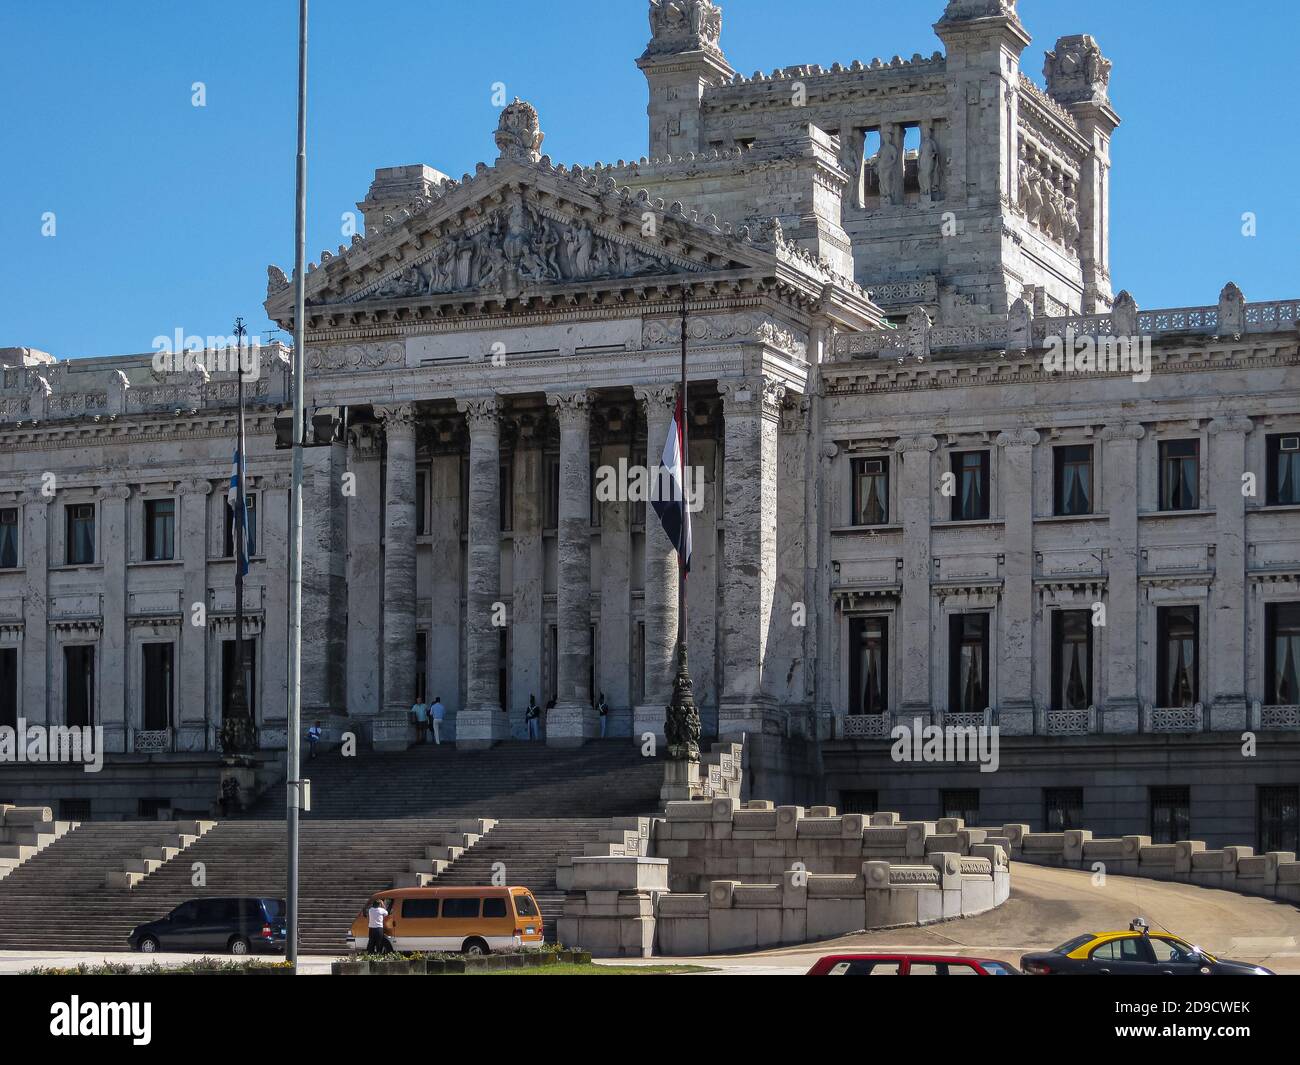 Montevideo, Uruguay - 18 décembre 2008 : le palais législatif ou le Parlement est un édifice monumental en pierre grise avec statues, entrée, façades et STA Banque D'Images